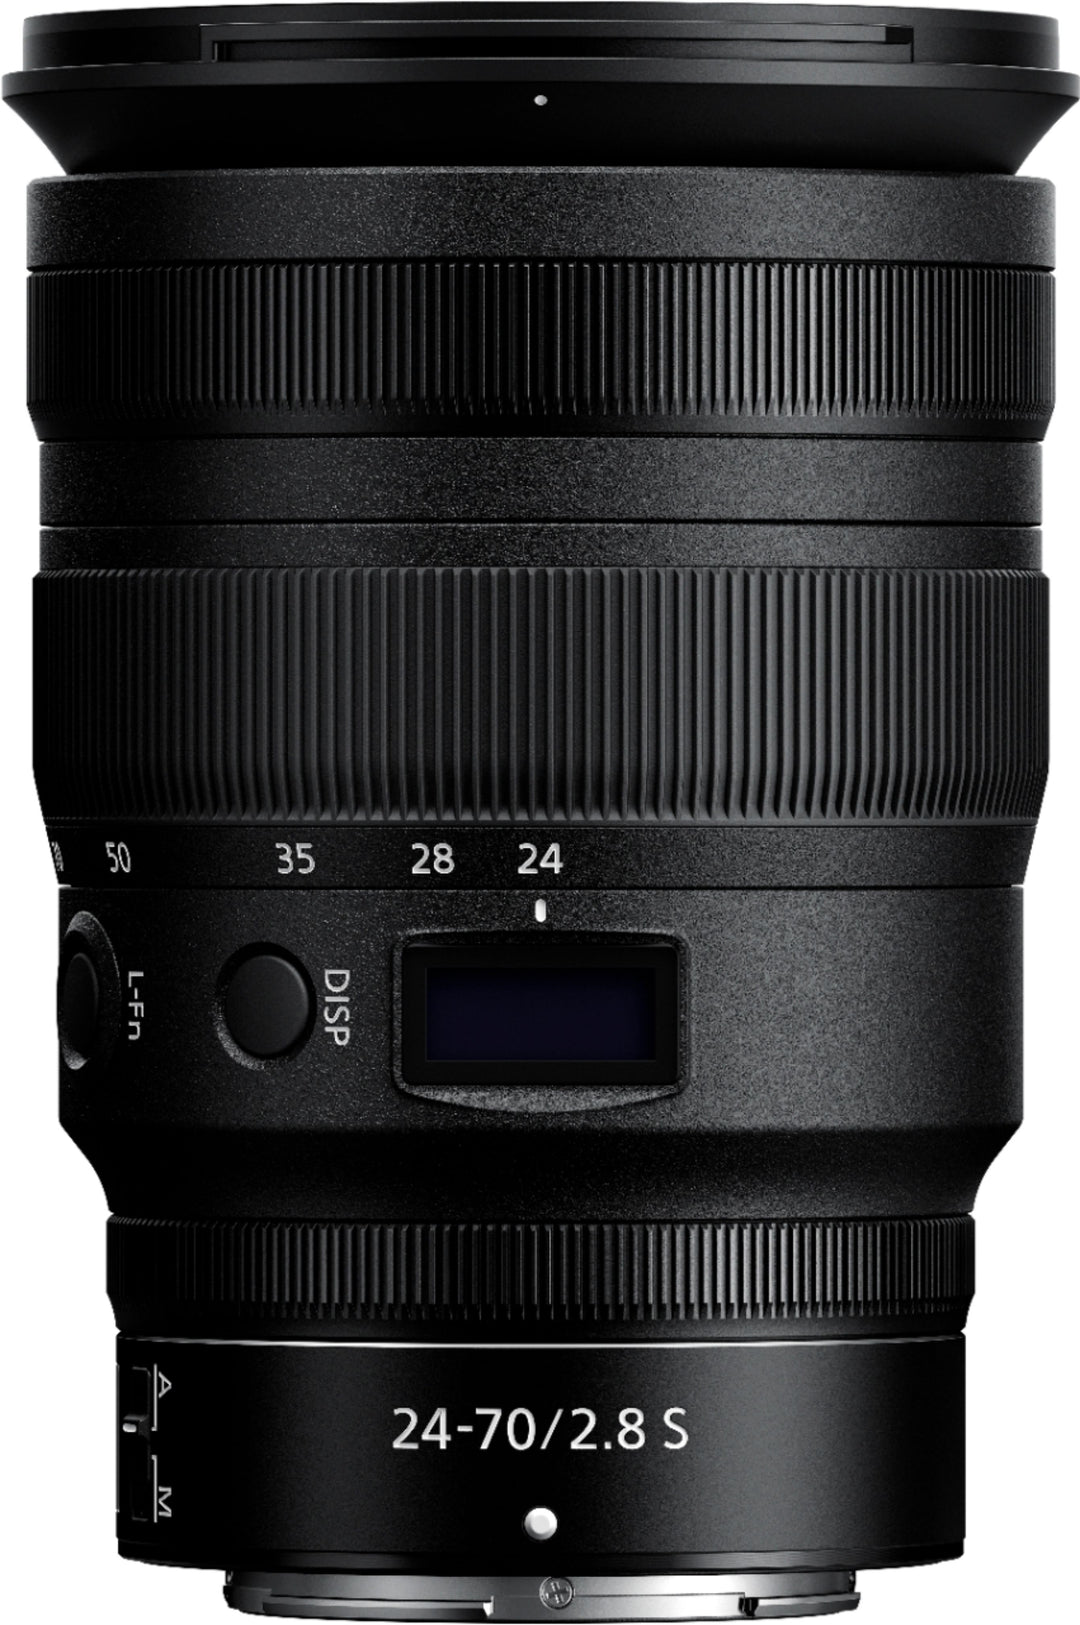 Nikkor Z 24-70mm f/2.8 S Optical Zoom Lens for Nikon Z - Black_5